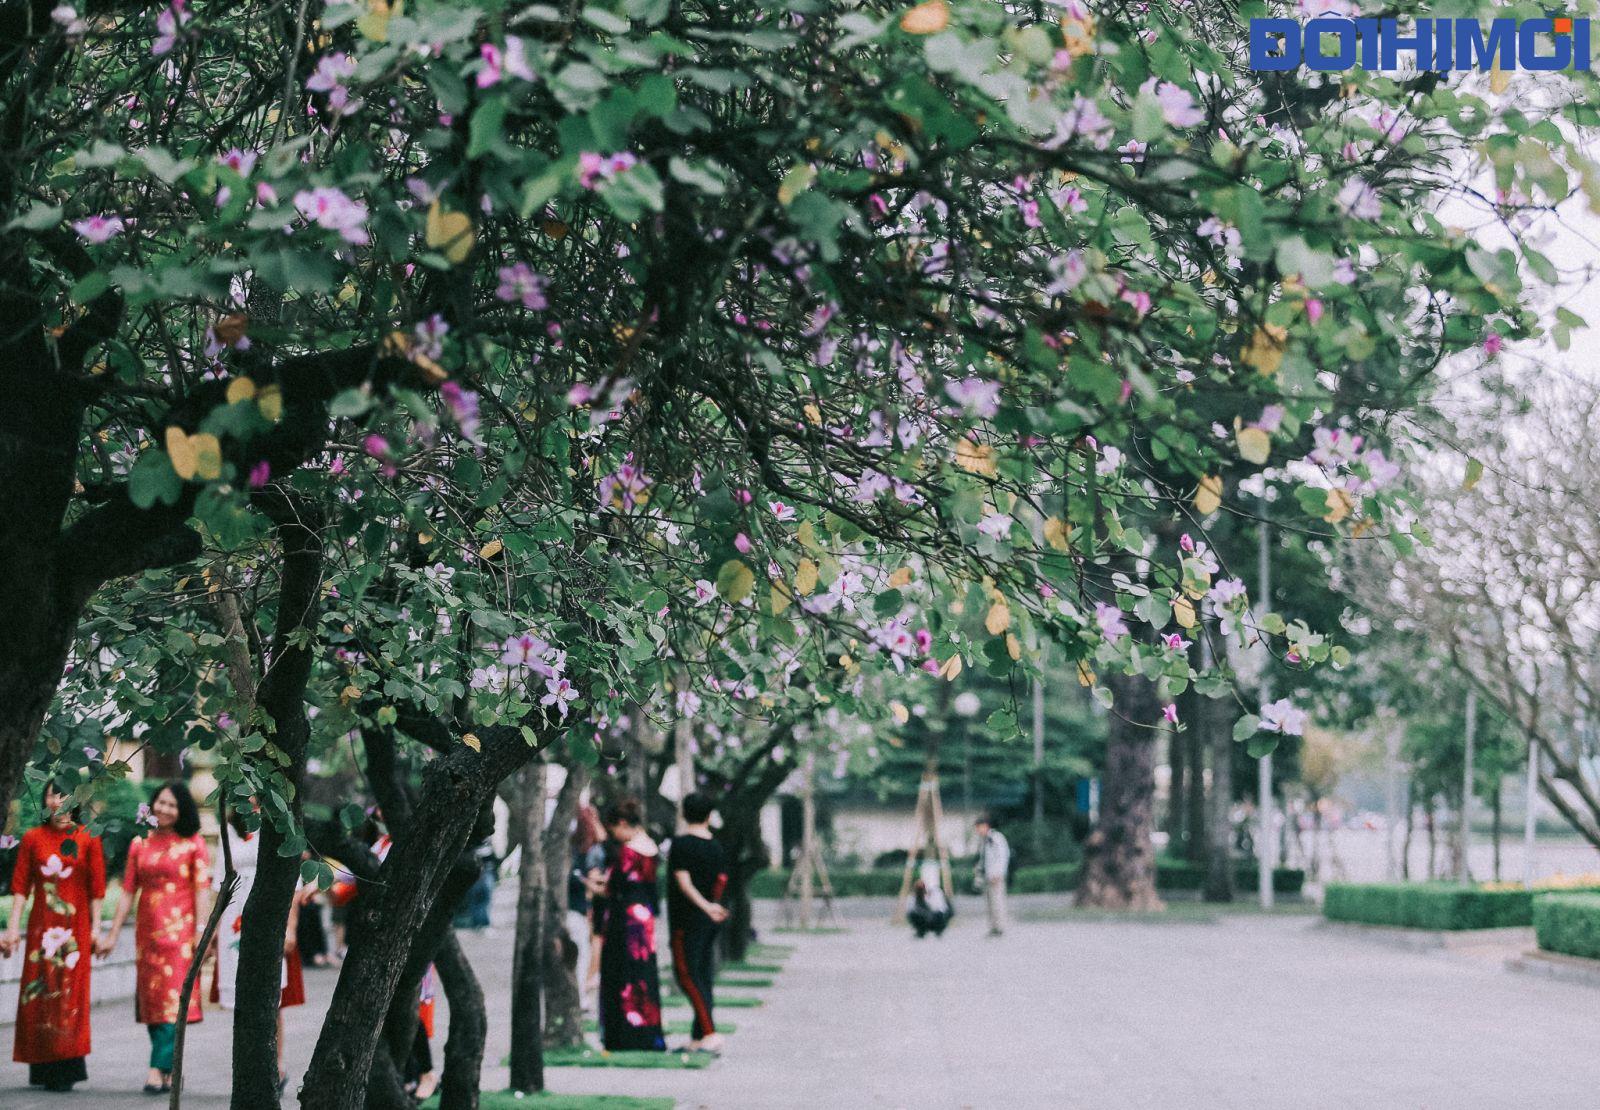 Hoa ban từ lâu đã được trồng rất nhiều ở Hà Nội, nhưng những cây hoa ban trên đường Hoàng Diệu, Bắc Sơn luôn được nhiều người biết đến hơn cả.